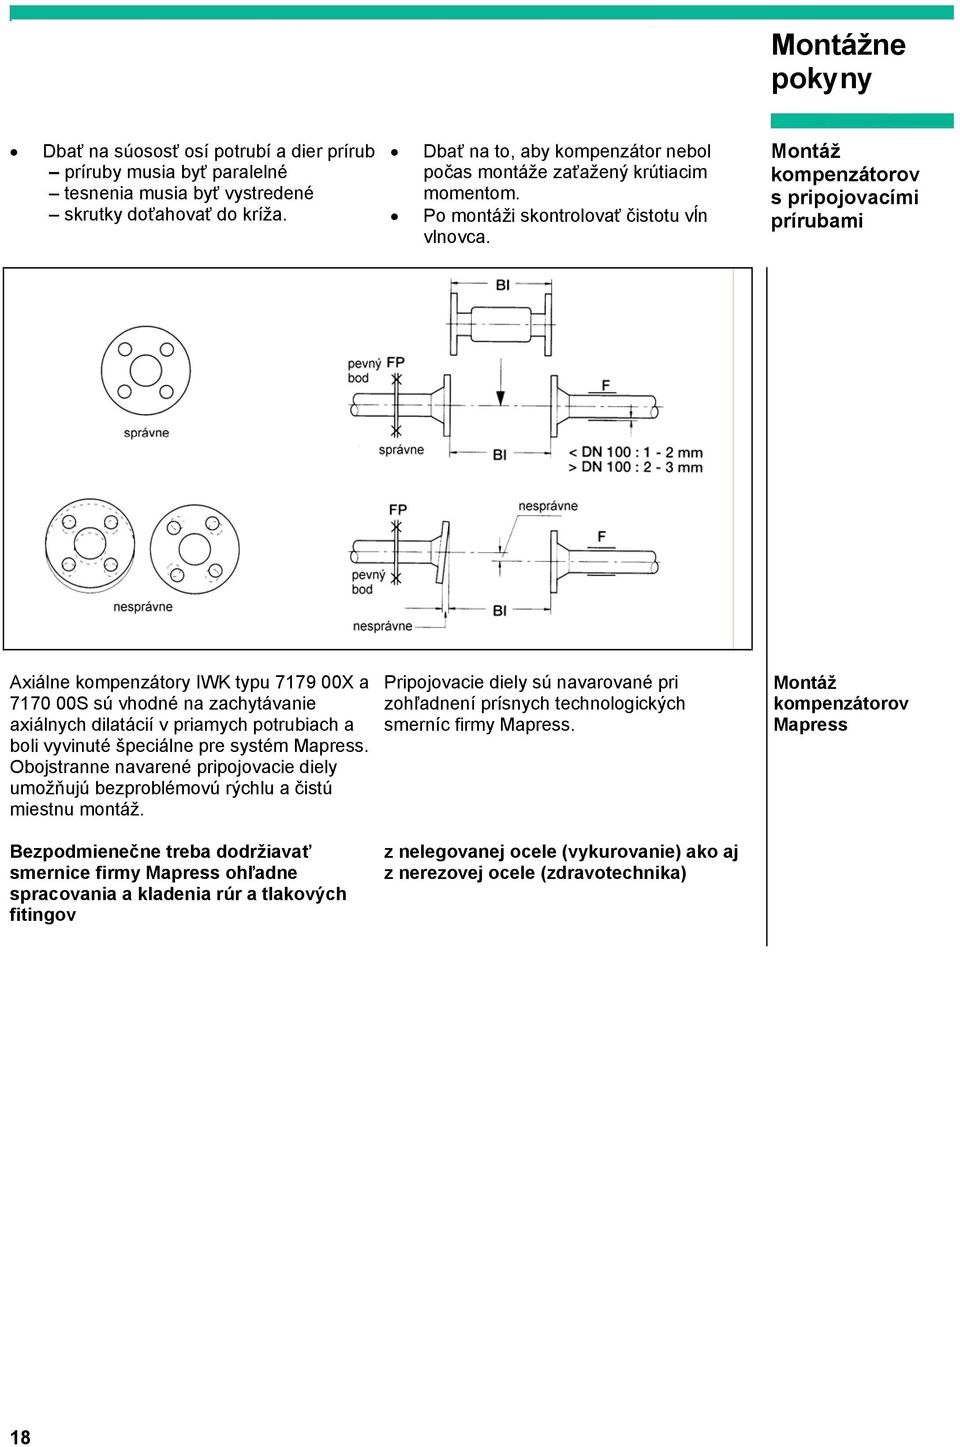 Montáž kompenzátorov s pripojovacími prírubami Axiálne kompenzátory IWK typu 7179 00X a 7170 00S sú vhodné na zachytávanie axiálnych dilatácií v priamych potrubiach a boli vyvinuté špeciálne pre